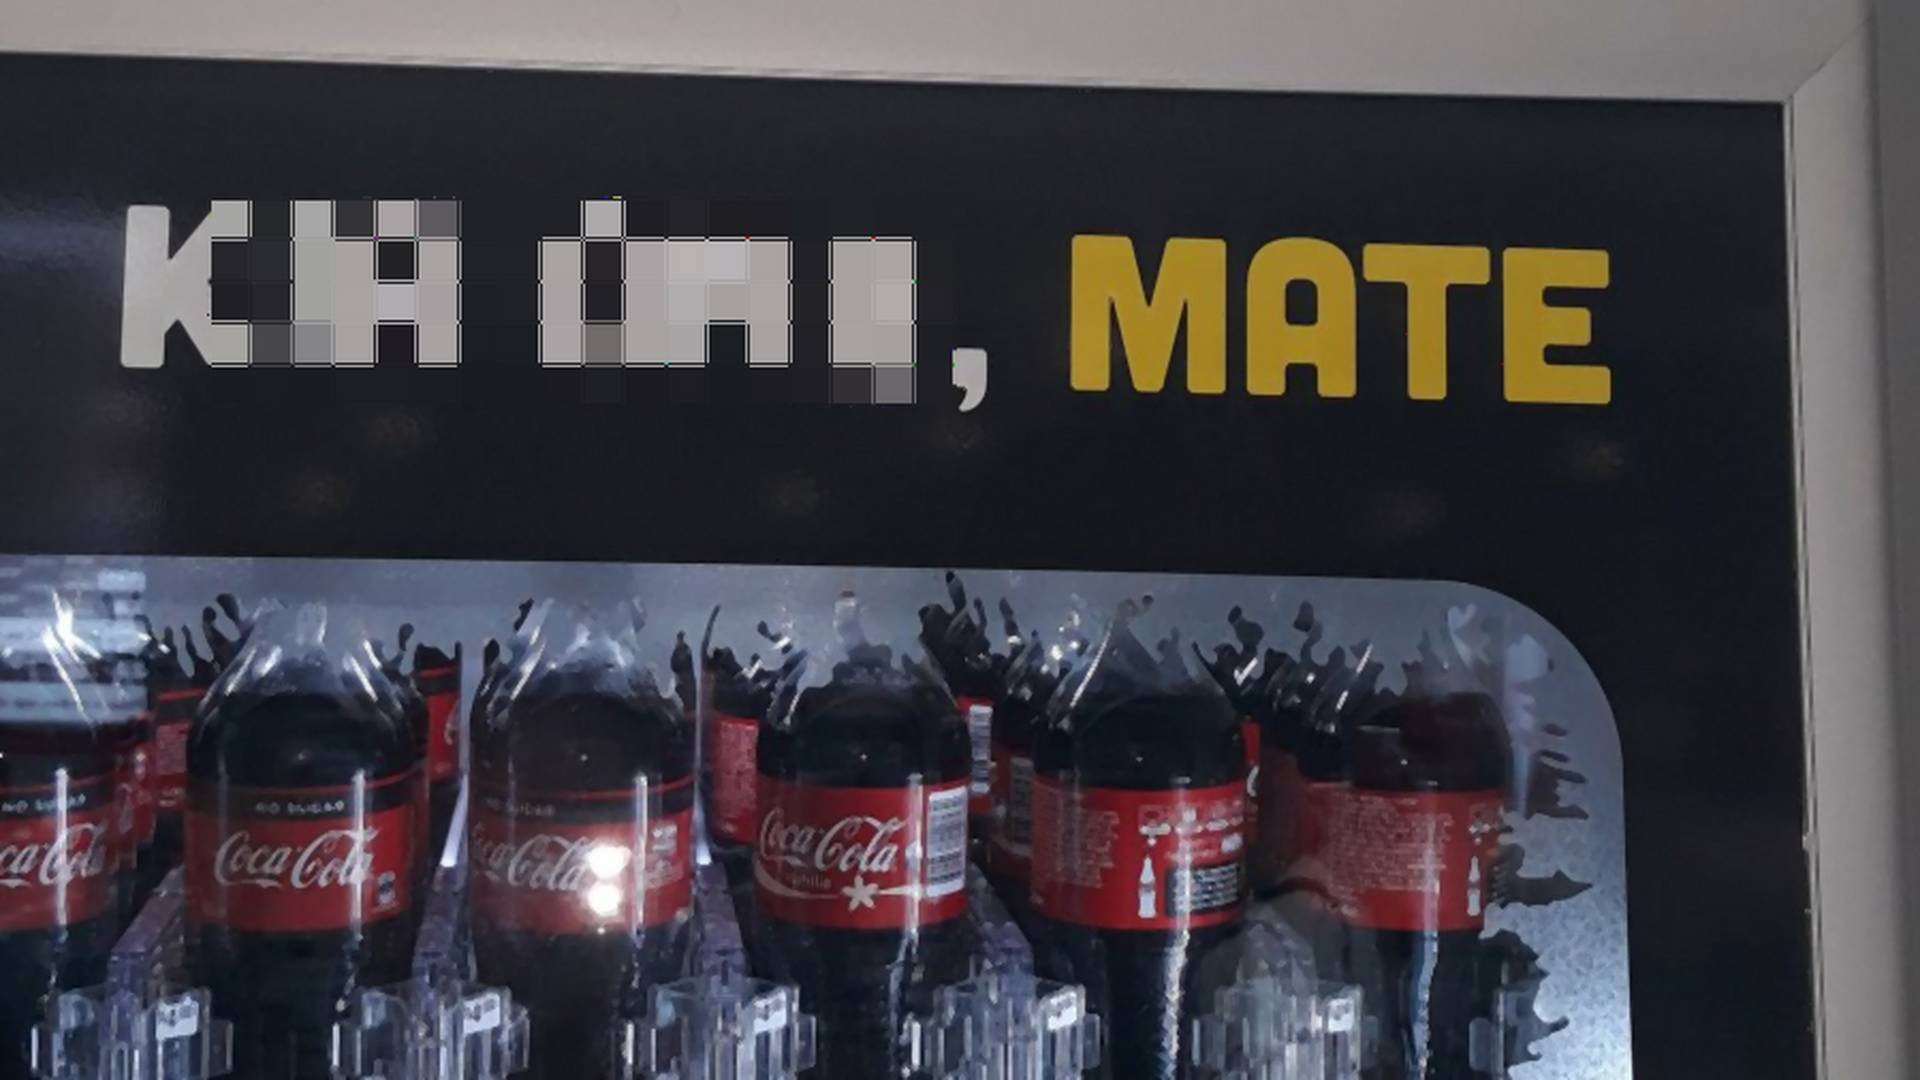 Coca-cola zaliczyła makabryczną wpadkę. Marka życzyła klientom śmierci